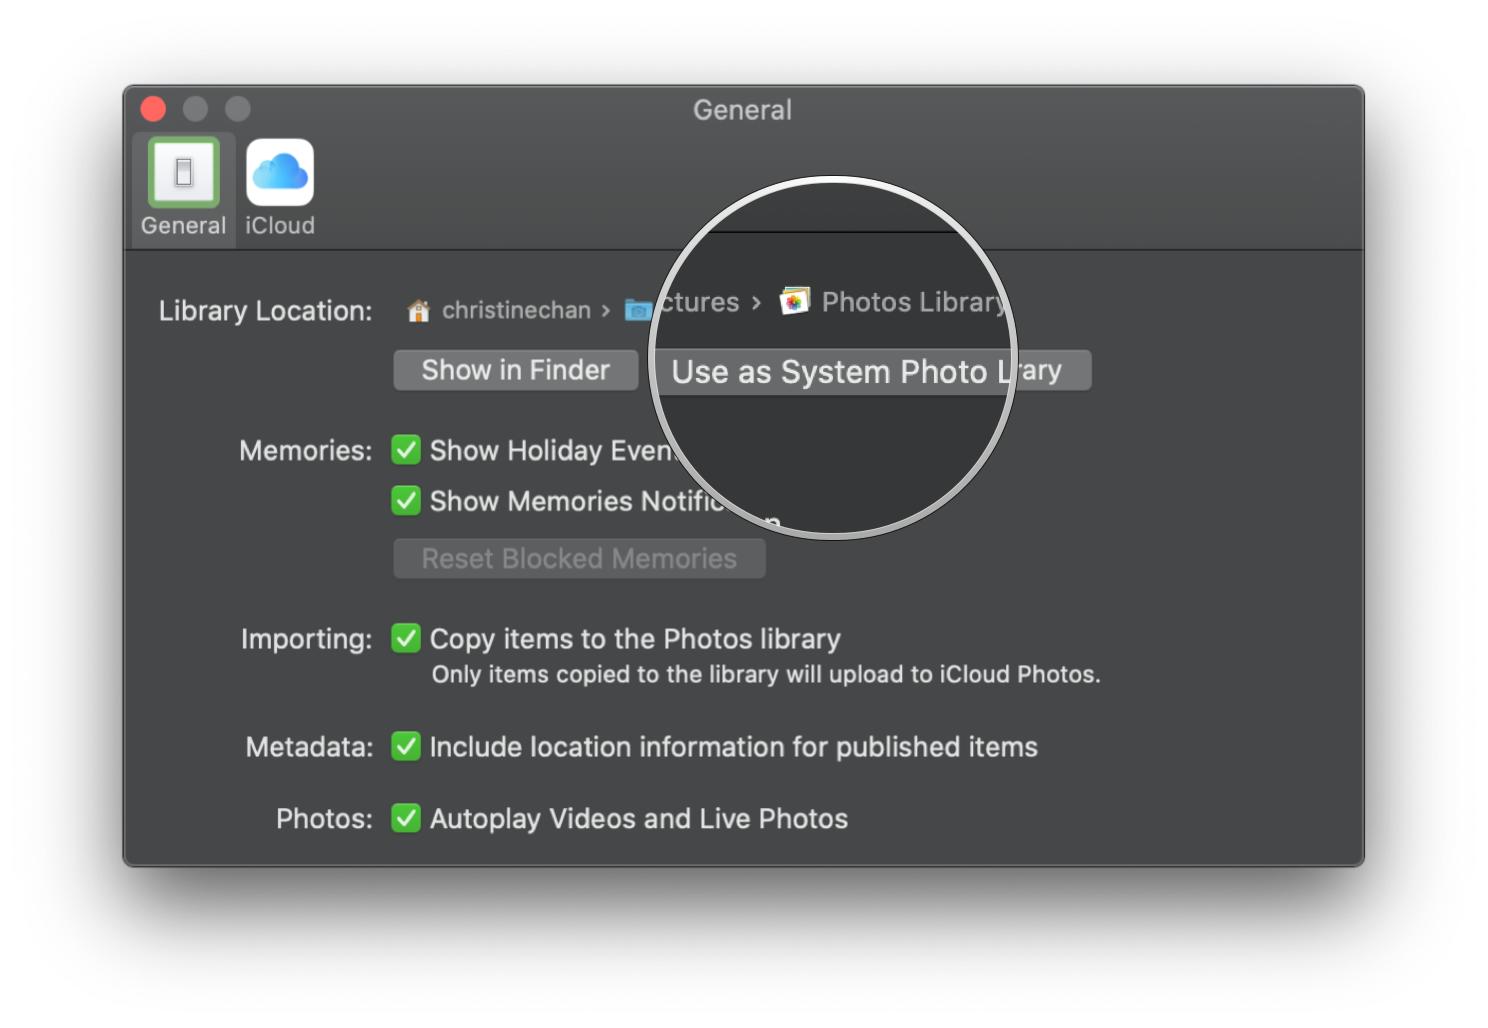 So verwenden Sie die iCloud-Fotobibliothek unter macOS Catalina, indem Sie die Schritte anzeigen: Klicken Sie auf Als System-Fotobibliothek verwenden, wenn Sie iCloud-Fotos nicht aktivieren können